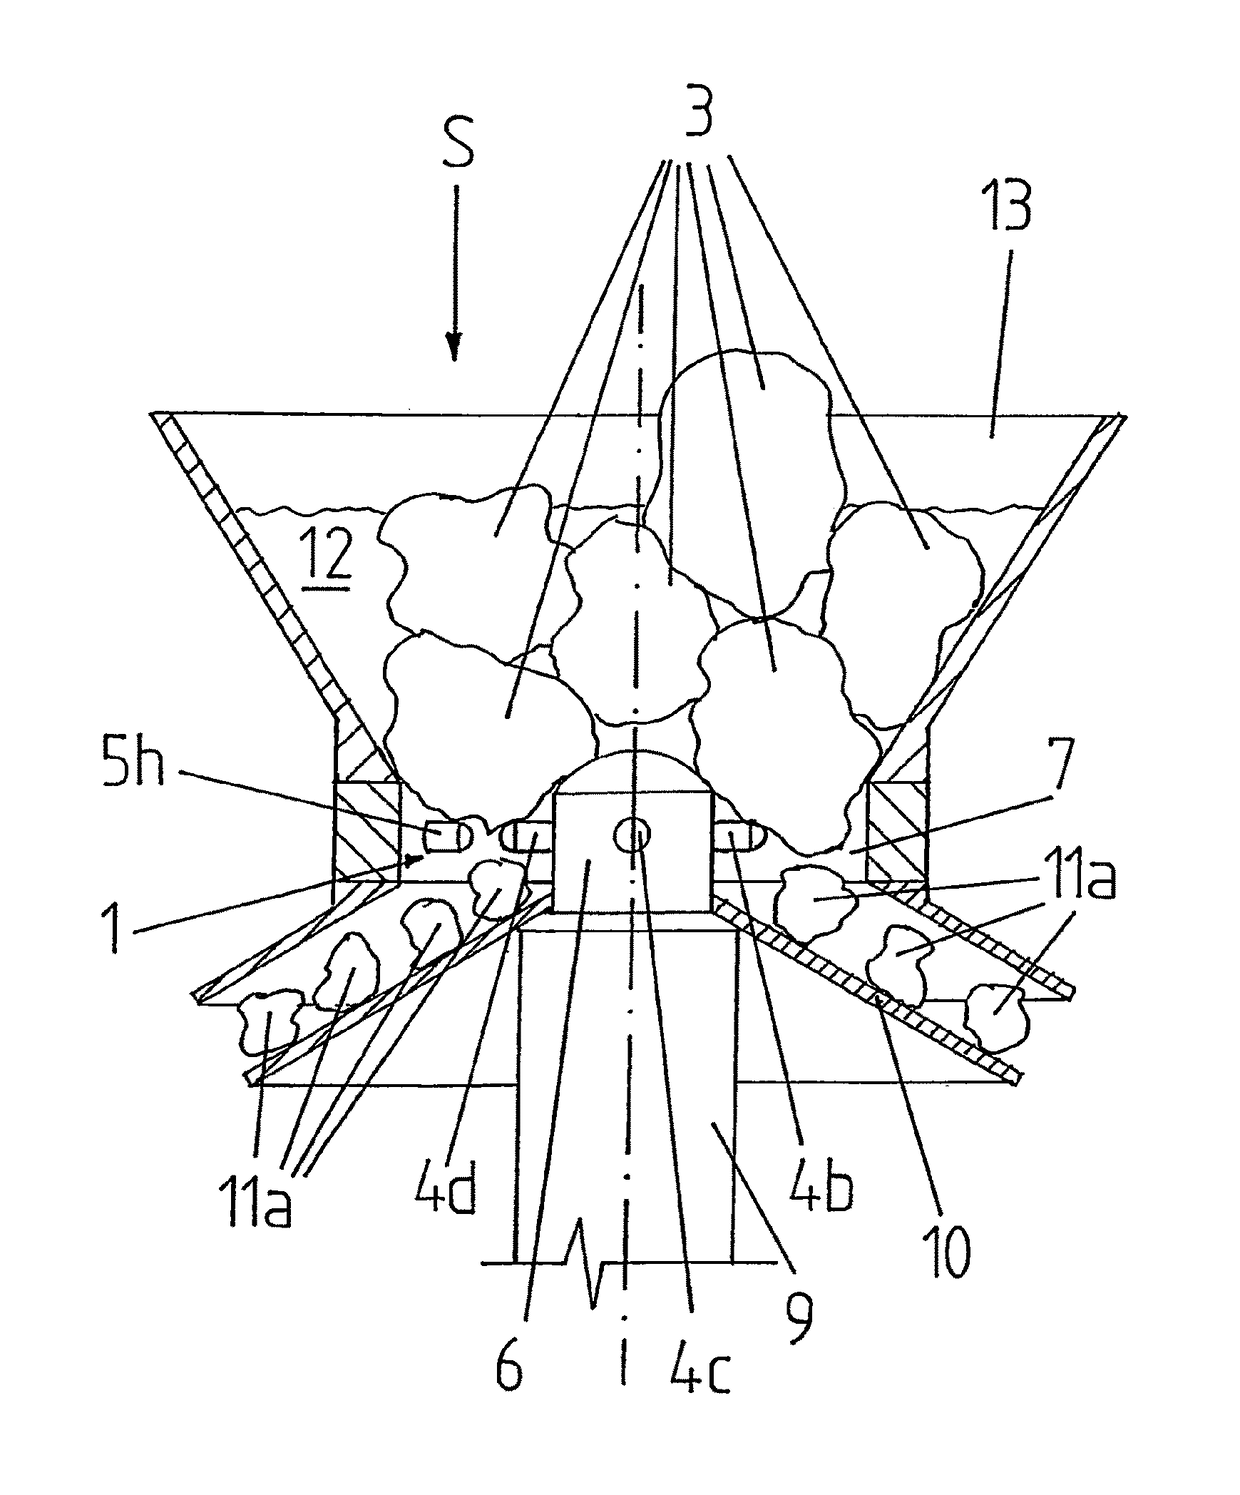 Electrode arrangement for an electrodynamic fragmentation plant